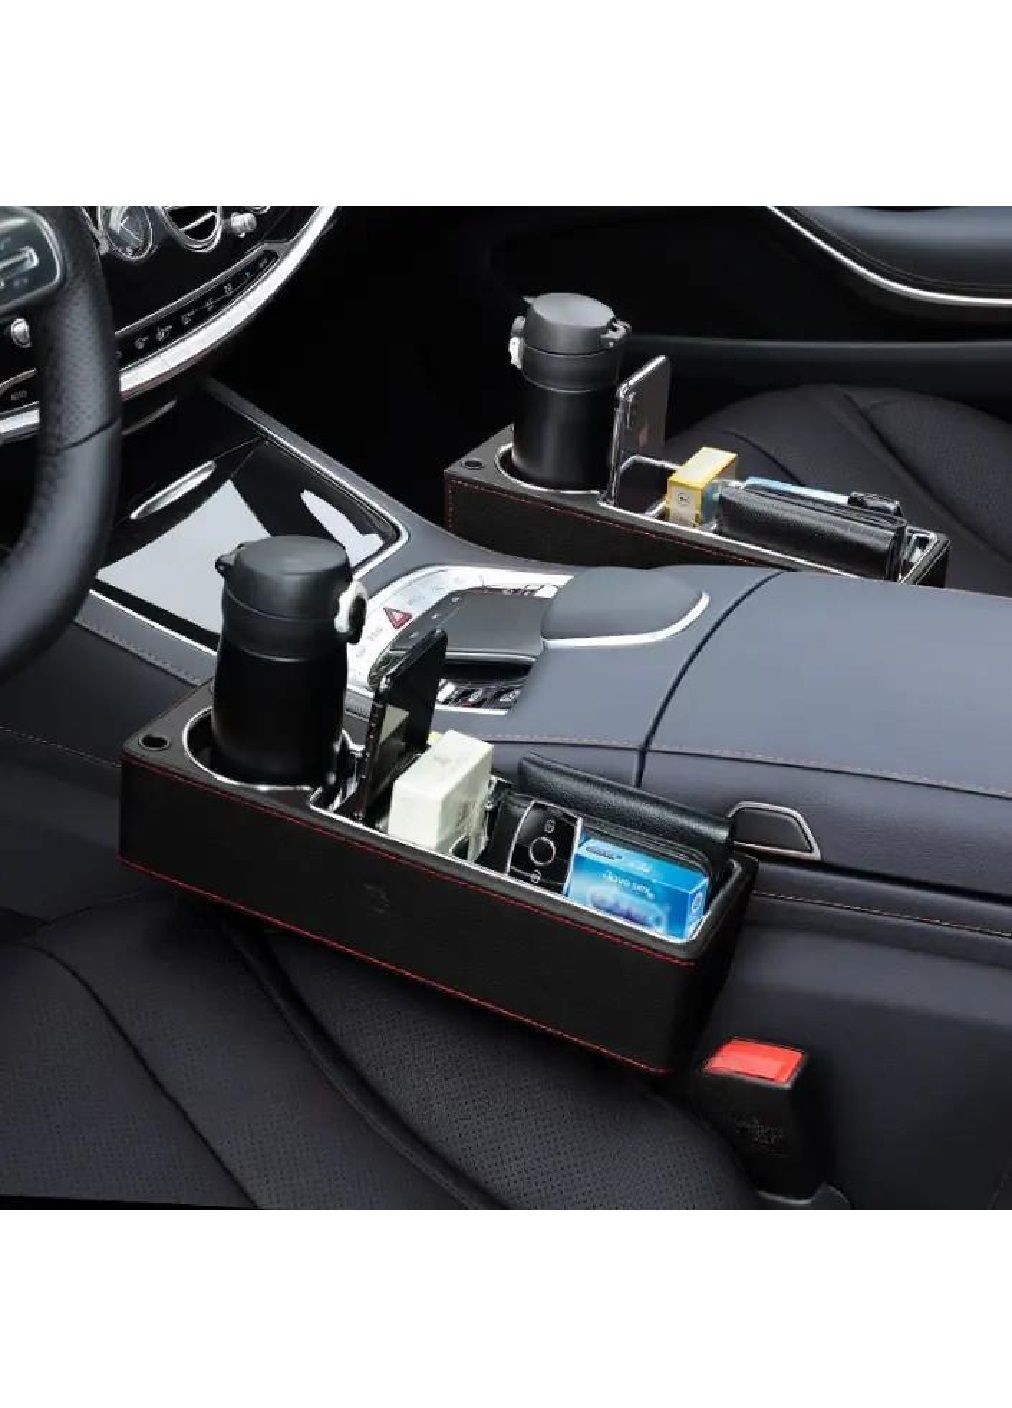 Органайзер карман для установки между сидениями в машину салон автомобиля без USB-разъема (476945-Prob) Левый Unbranded (292784549)